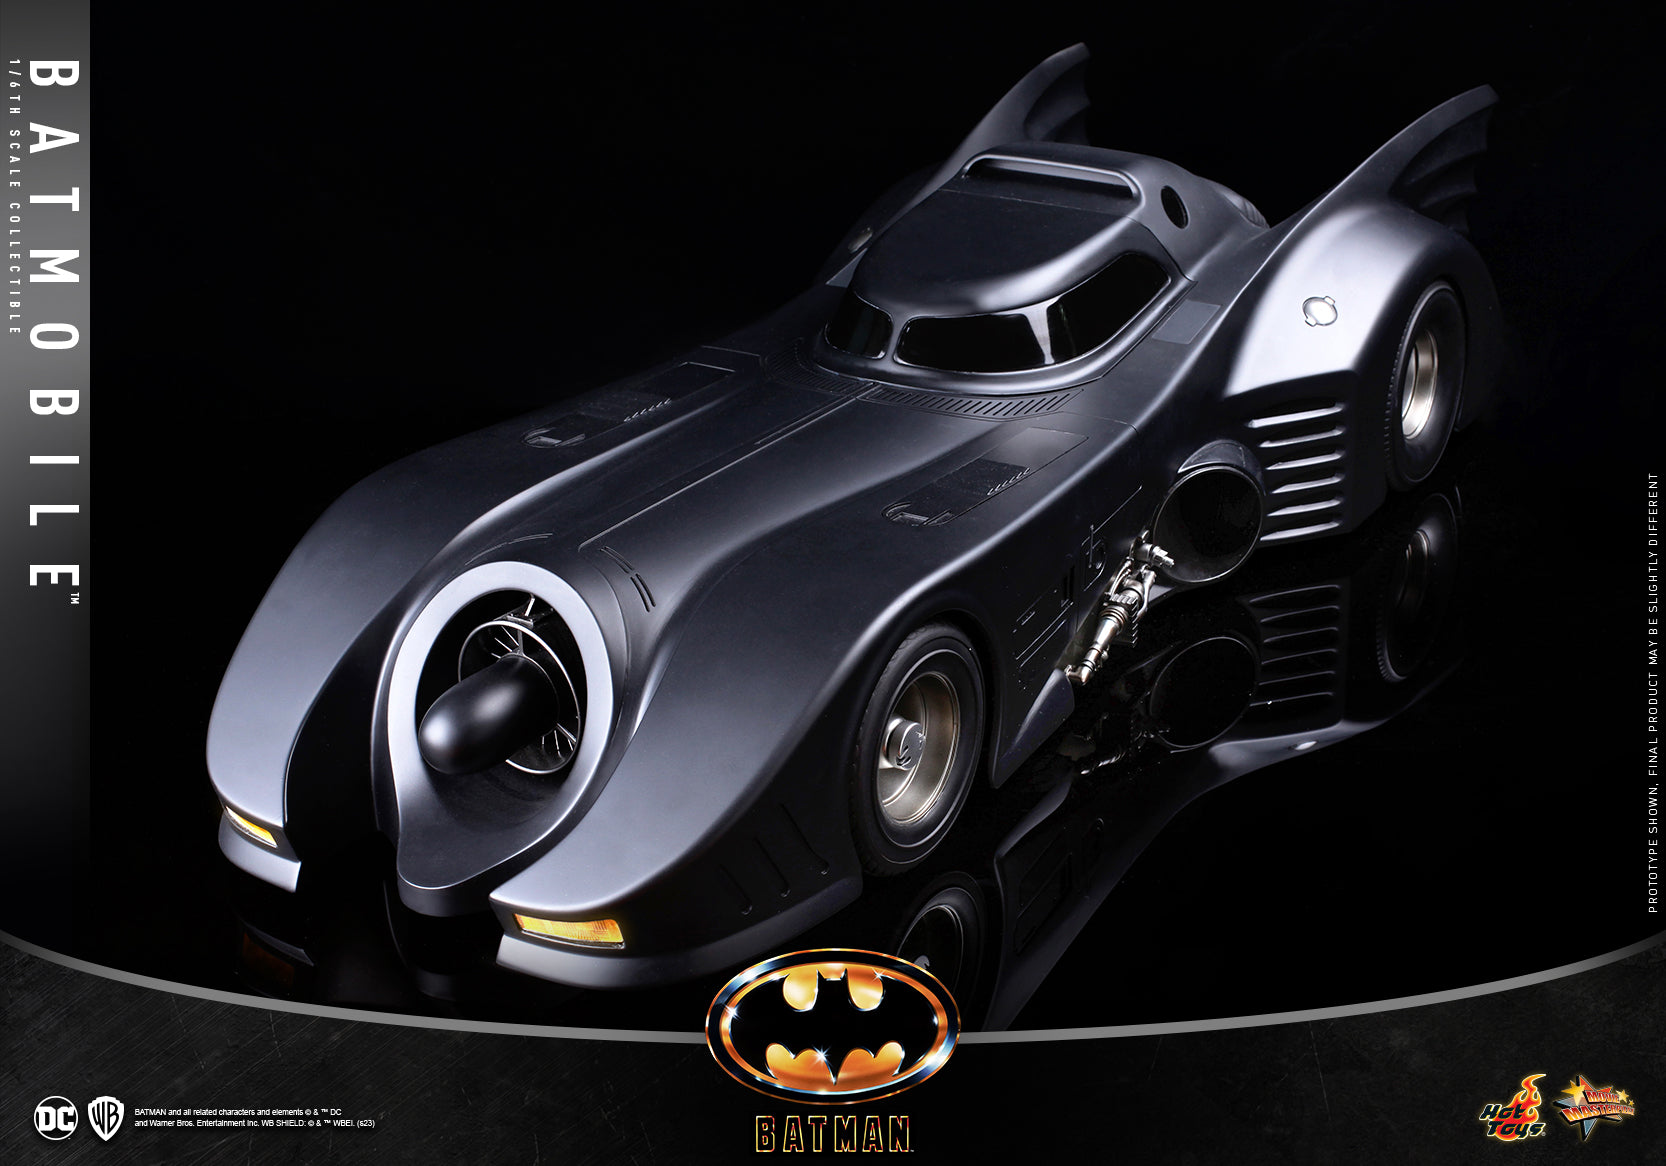 Hot Toys - MMS694 - Batman (1989)  - Batmobile - Marvelous Toys